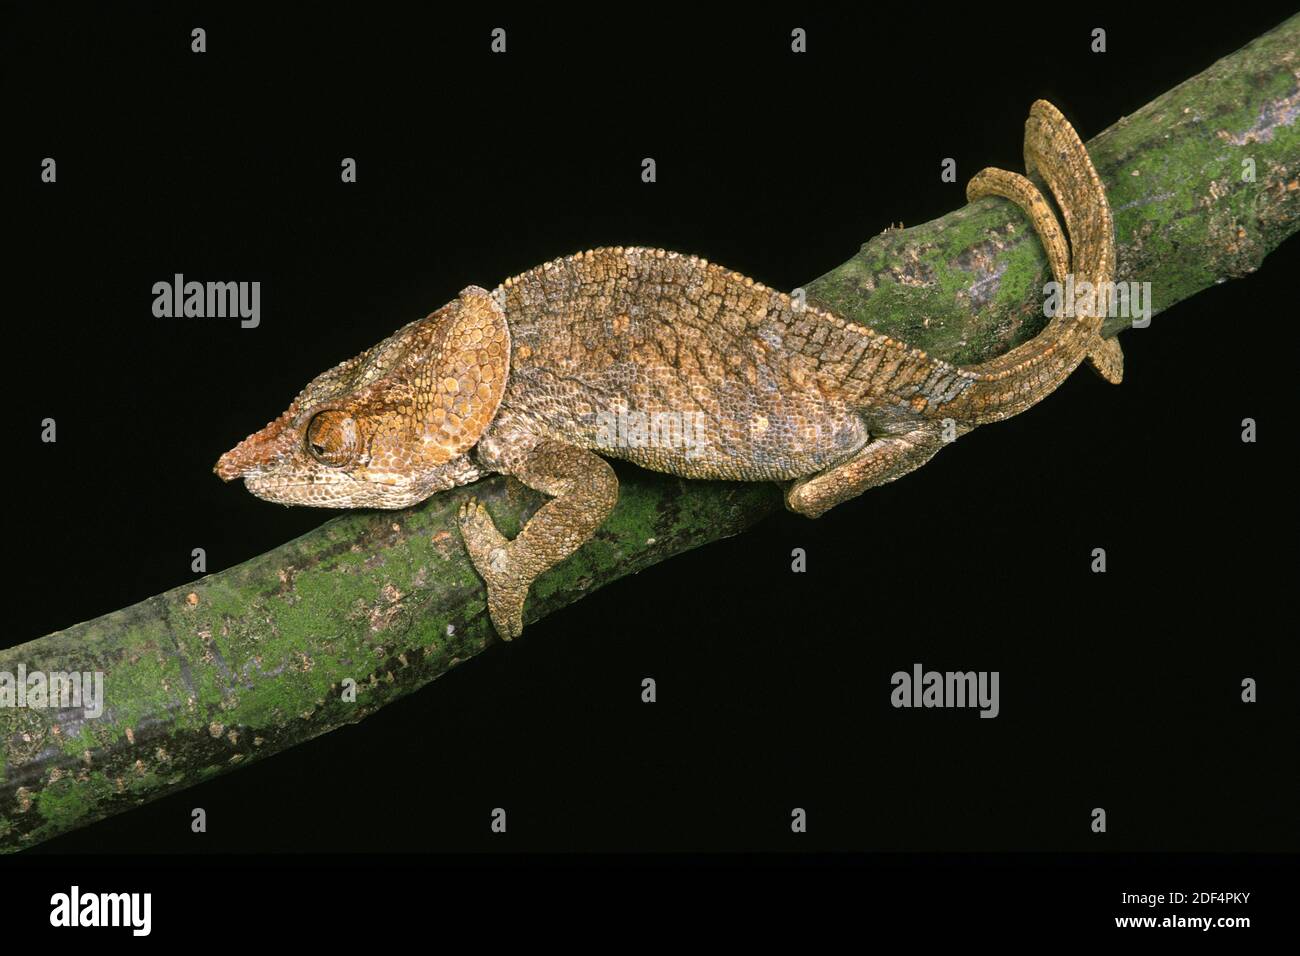 Short-Horned Chameleo, calumma brevicornis, Adult standing on Branch Stock Photo